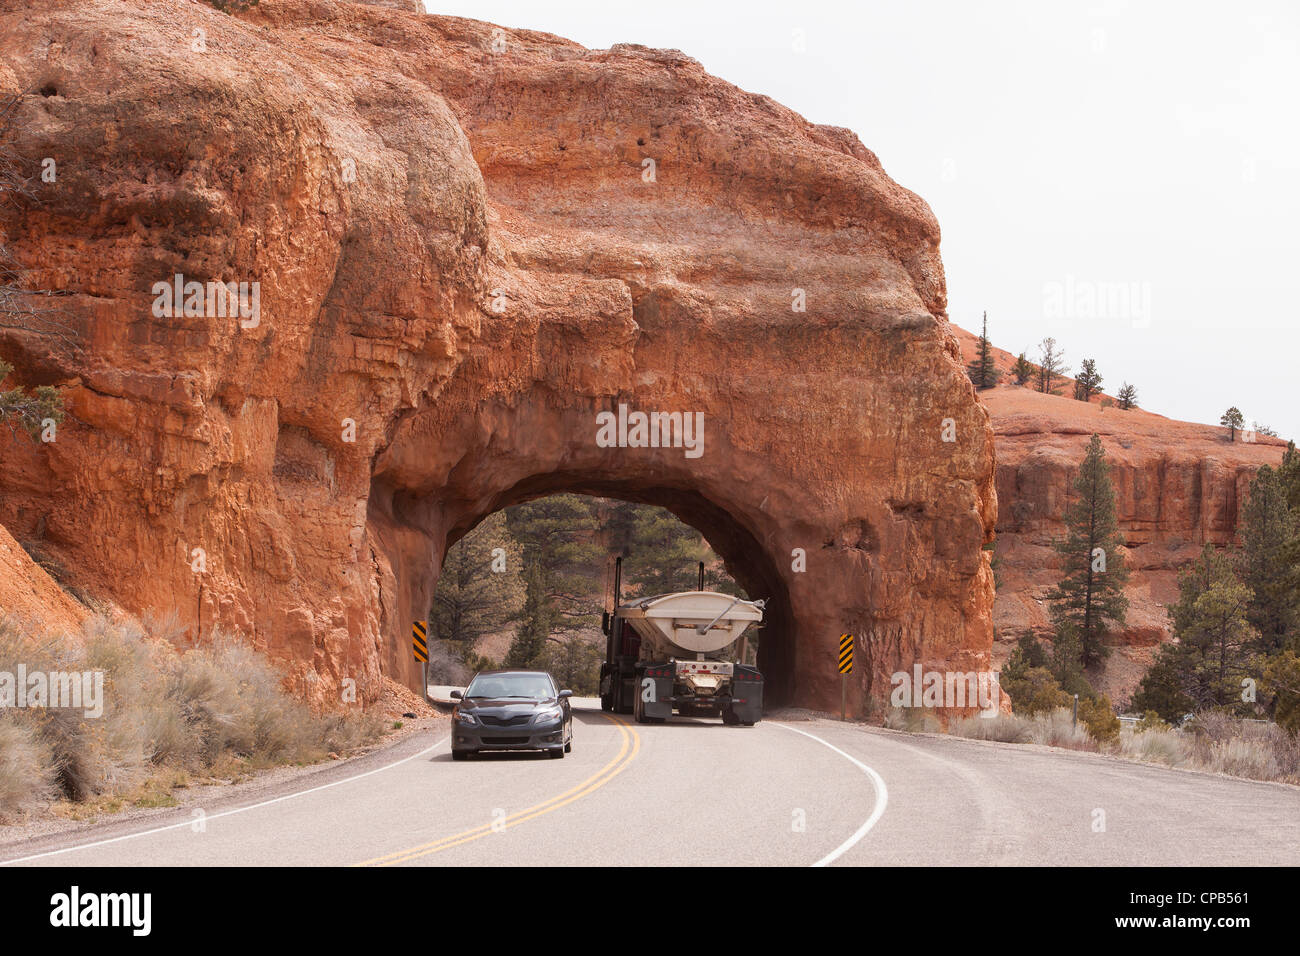 Bryce Canyon National Park, Utah. LKW und Auto fahren durch einen Tunnel.  Sandstein-Formationen in der Wüste. Foto neu zu entfachen. Stockfoto